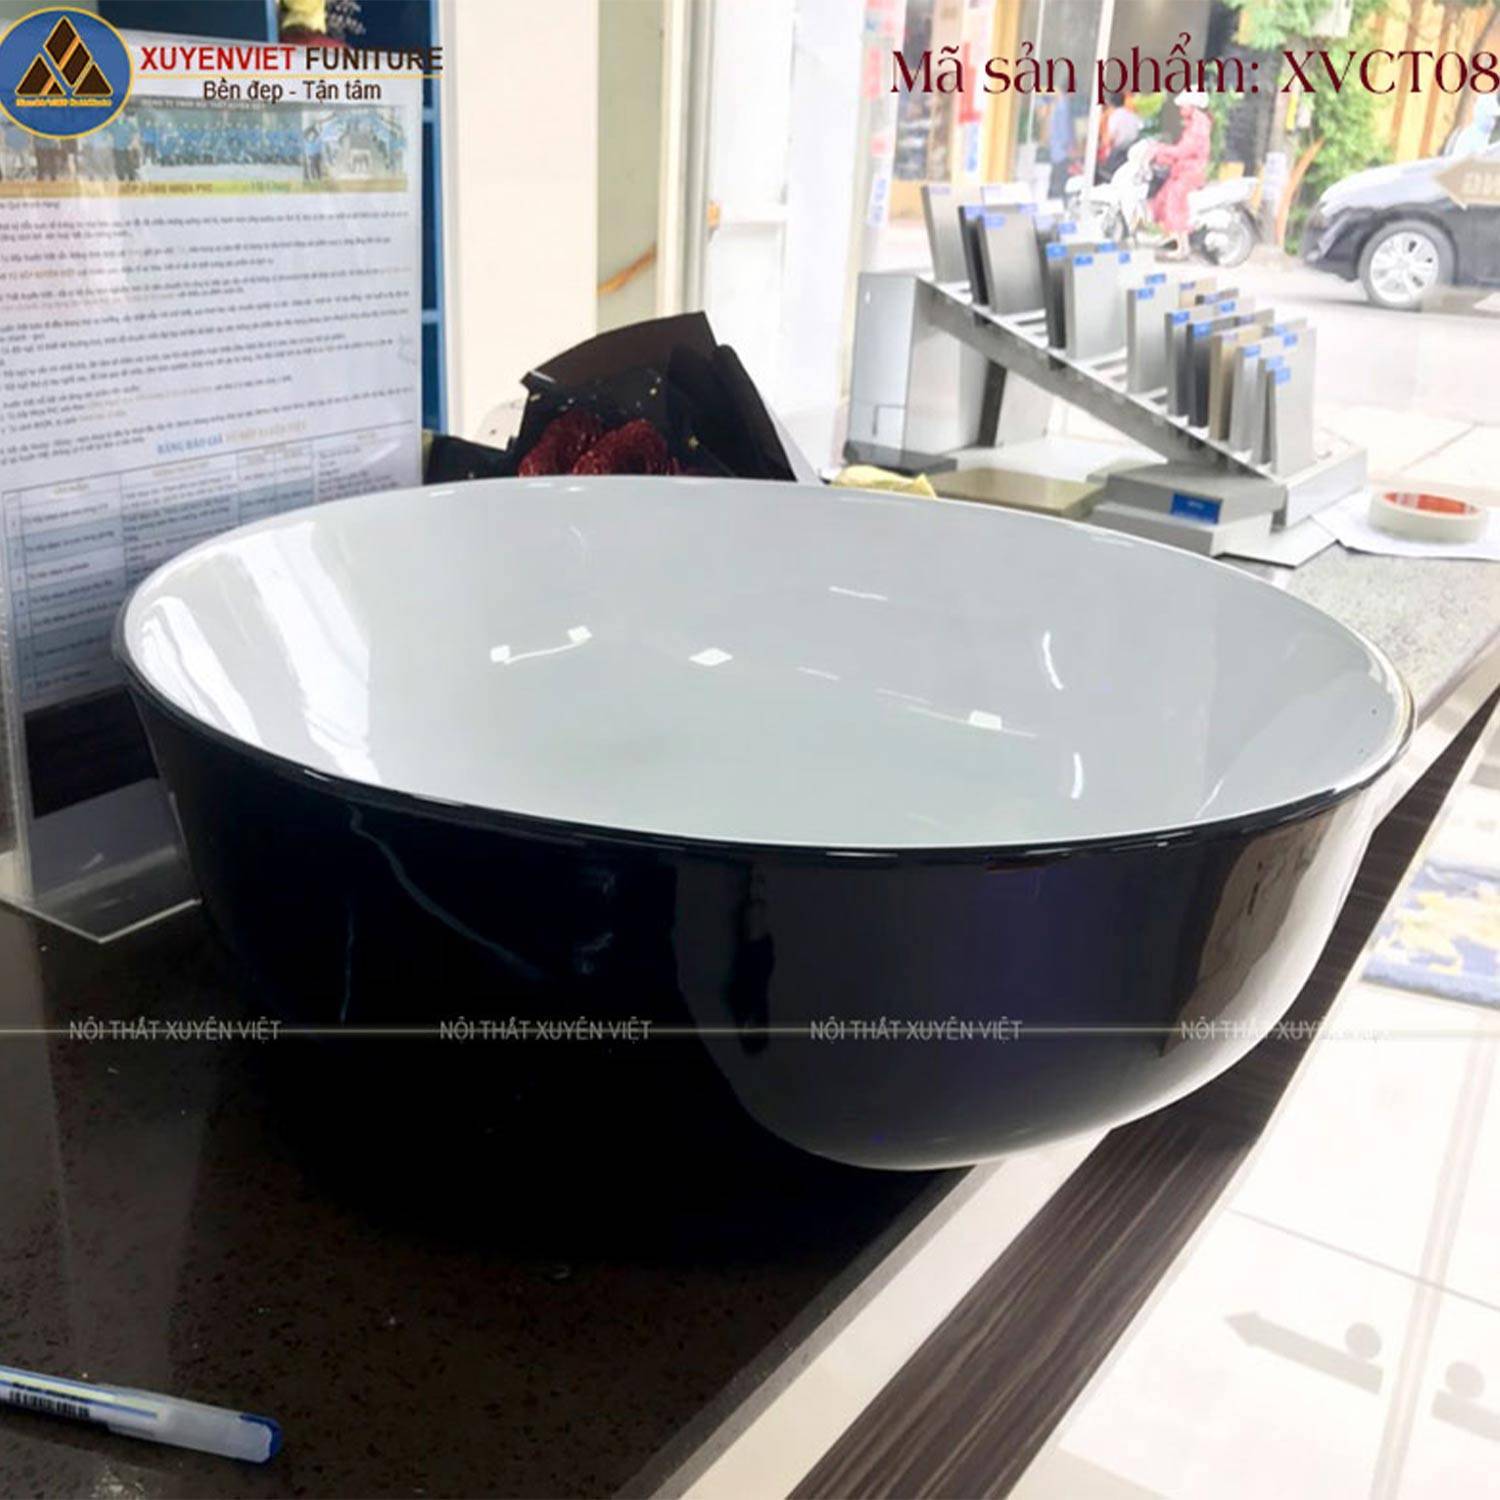 Chiếc chậu rửa lavabo đặt bàn dáng hình tròn XVCT08 đầy cuốn hút trong nhà tắm hiện đang có sẵn tại Xuyên Việt